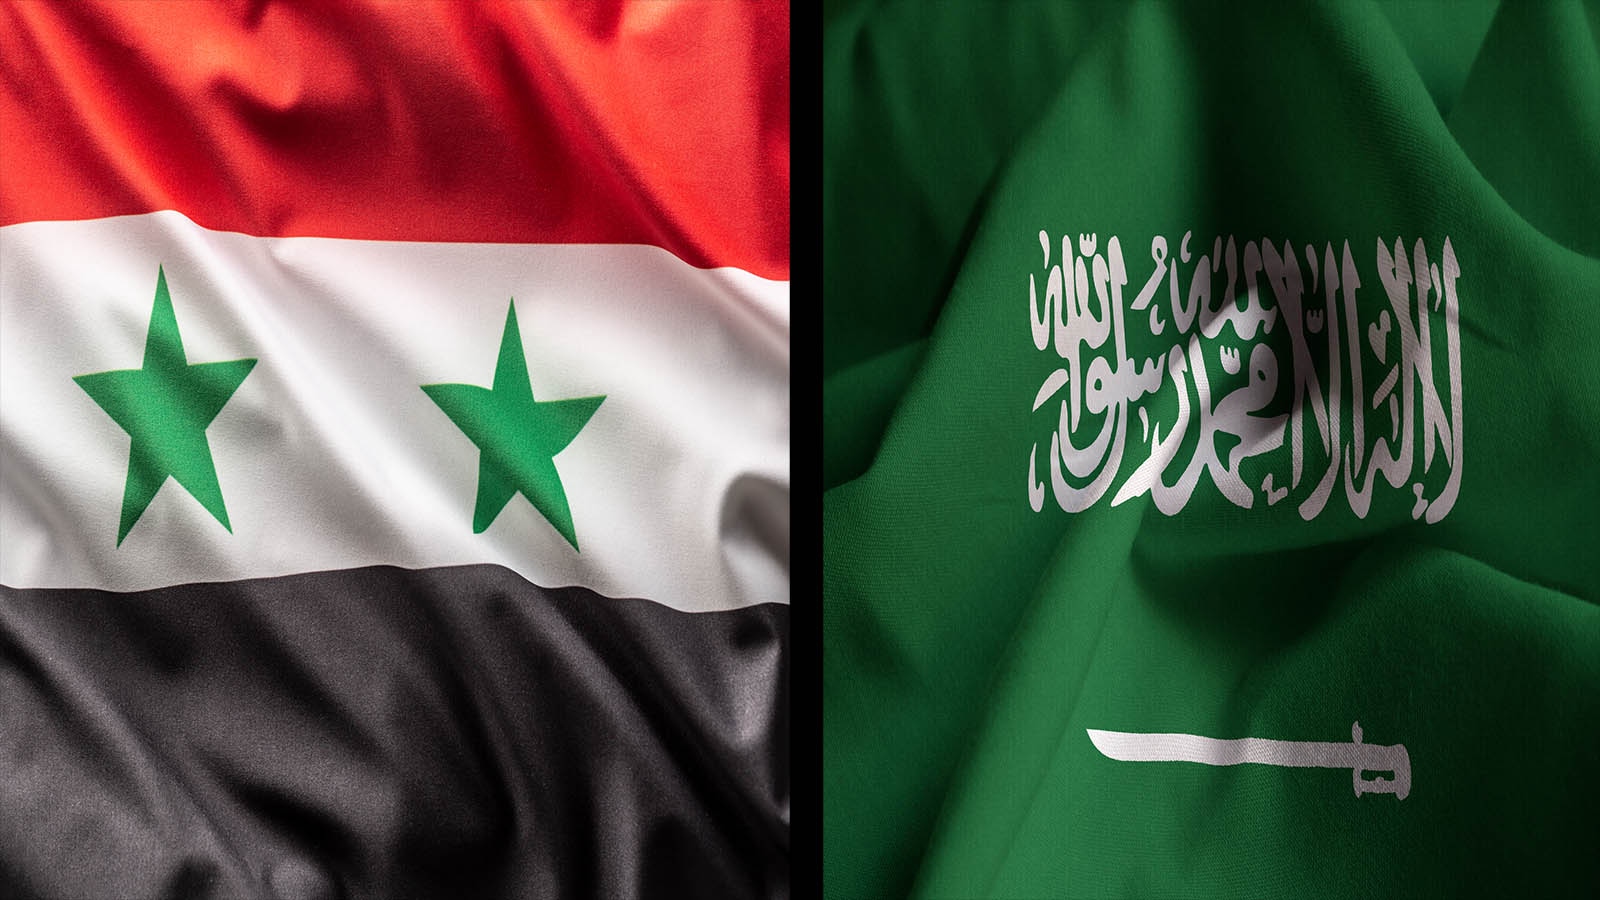 التطبيع بين النظام السوري والسعودية:واقع يقترب أم أمنية؟